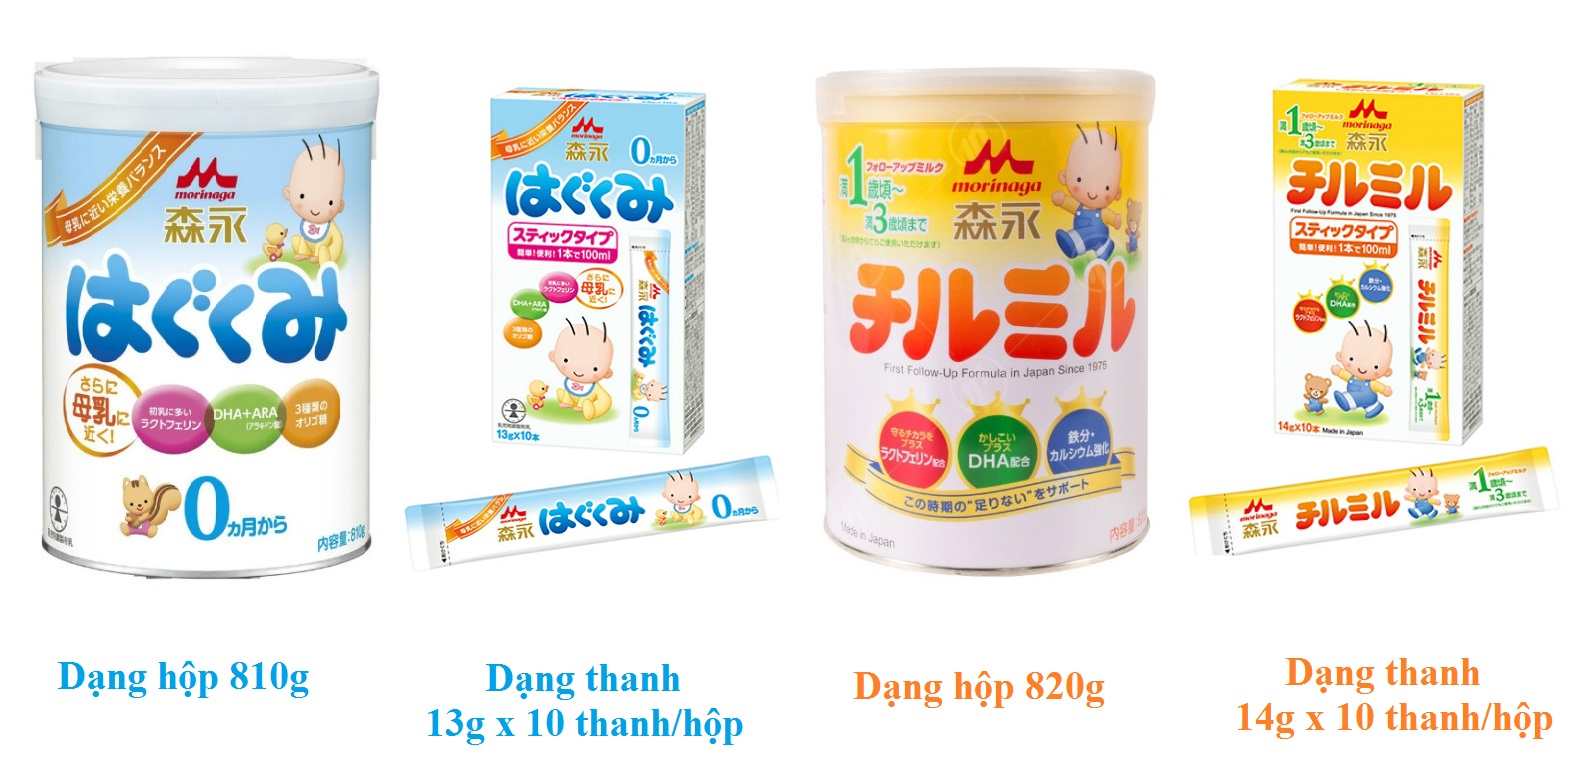 Sữa Morinaga số 9, dòng “Sữa rau” nổi tiếng của Nhật